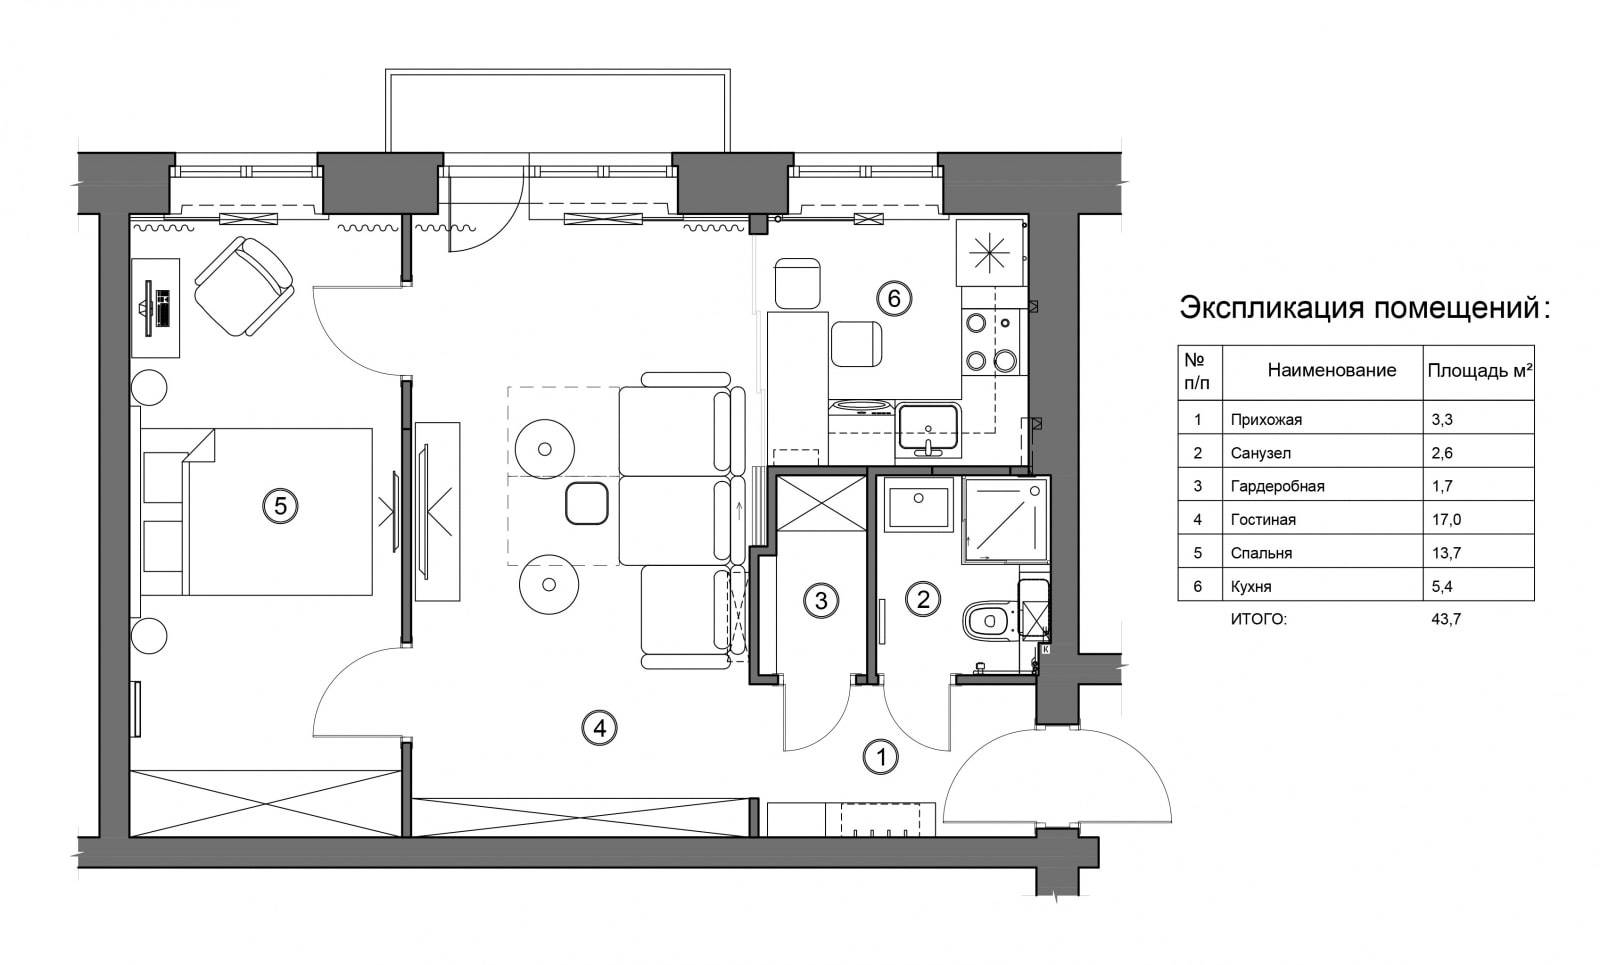 Три варианта перепланировки 3-х комнатной квартиры с фото.